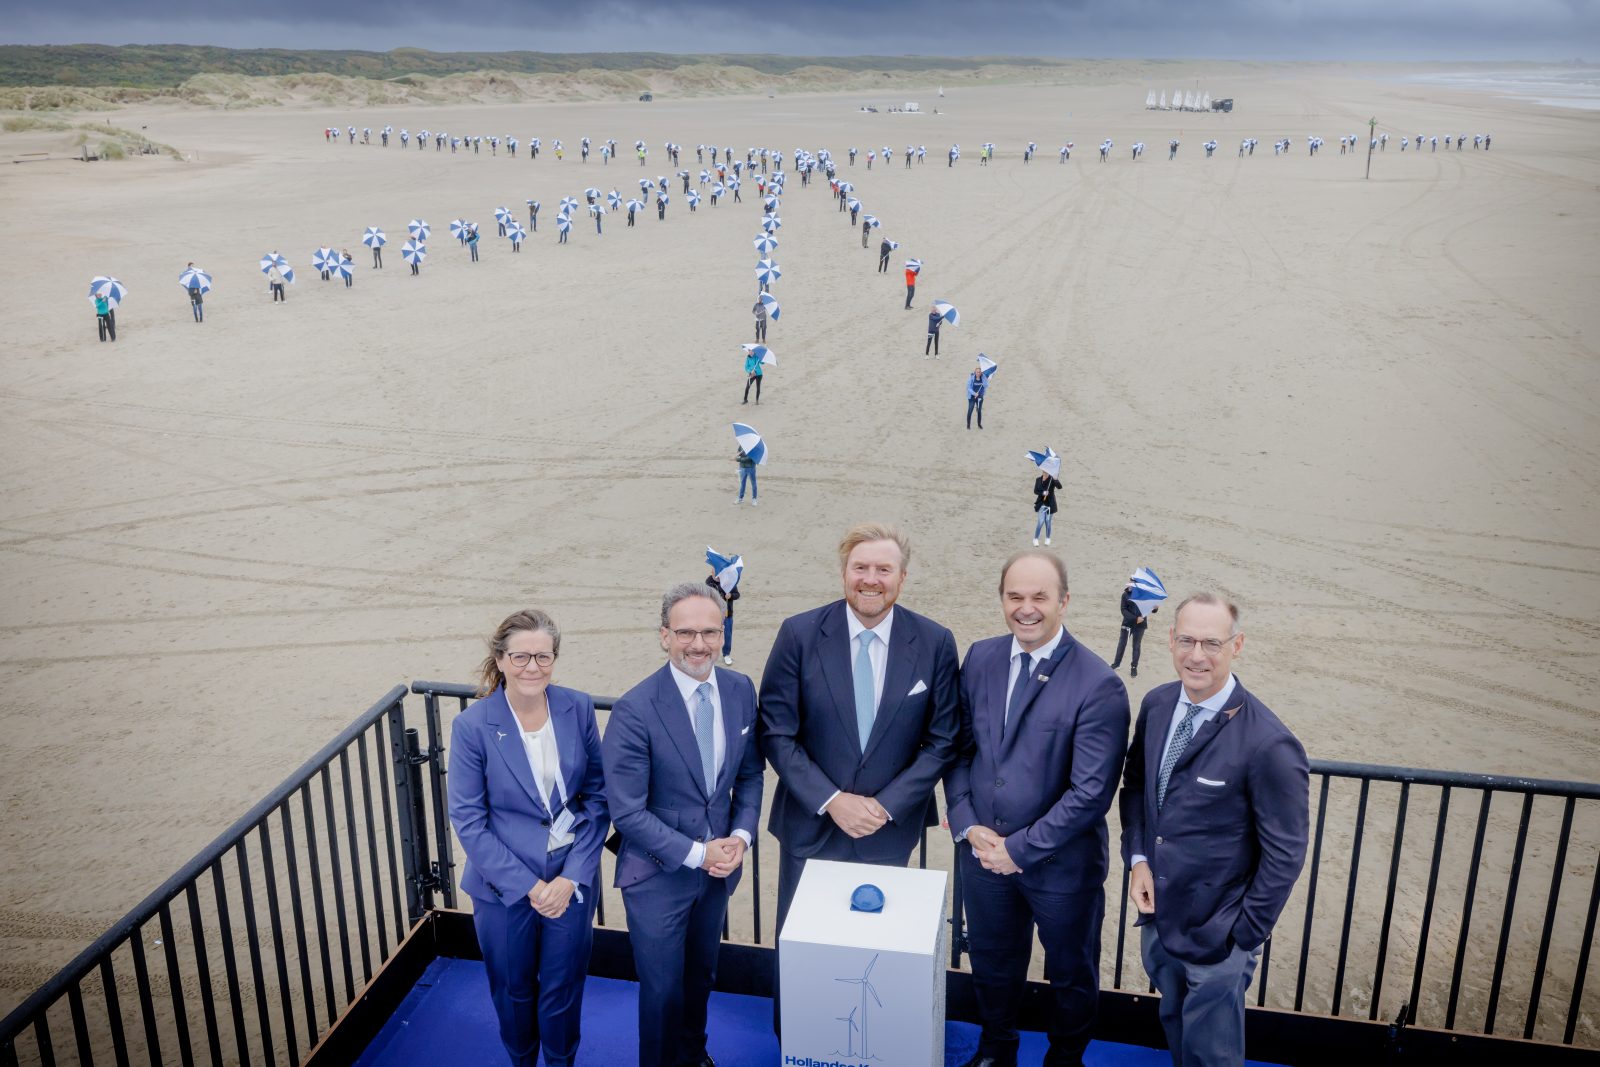 Gouden Giraffe Event Awards 2024: Opening Windpark Hollandse Kust Zuid Vattenfall